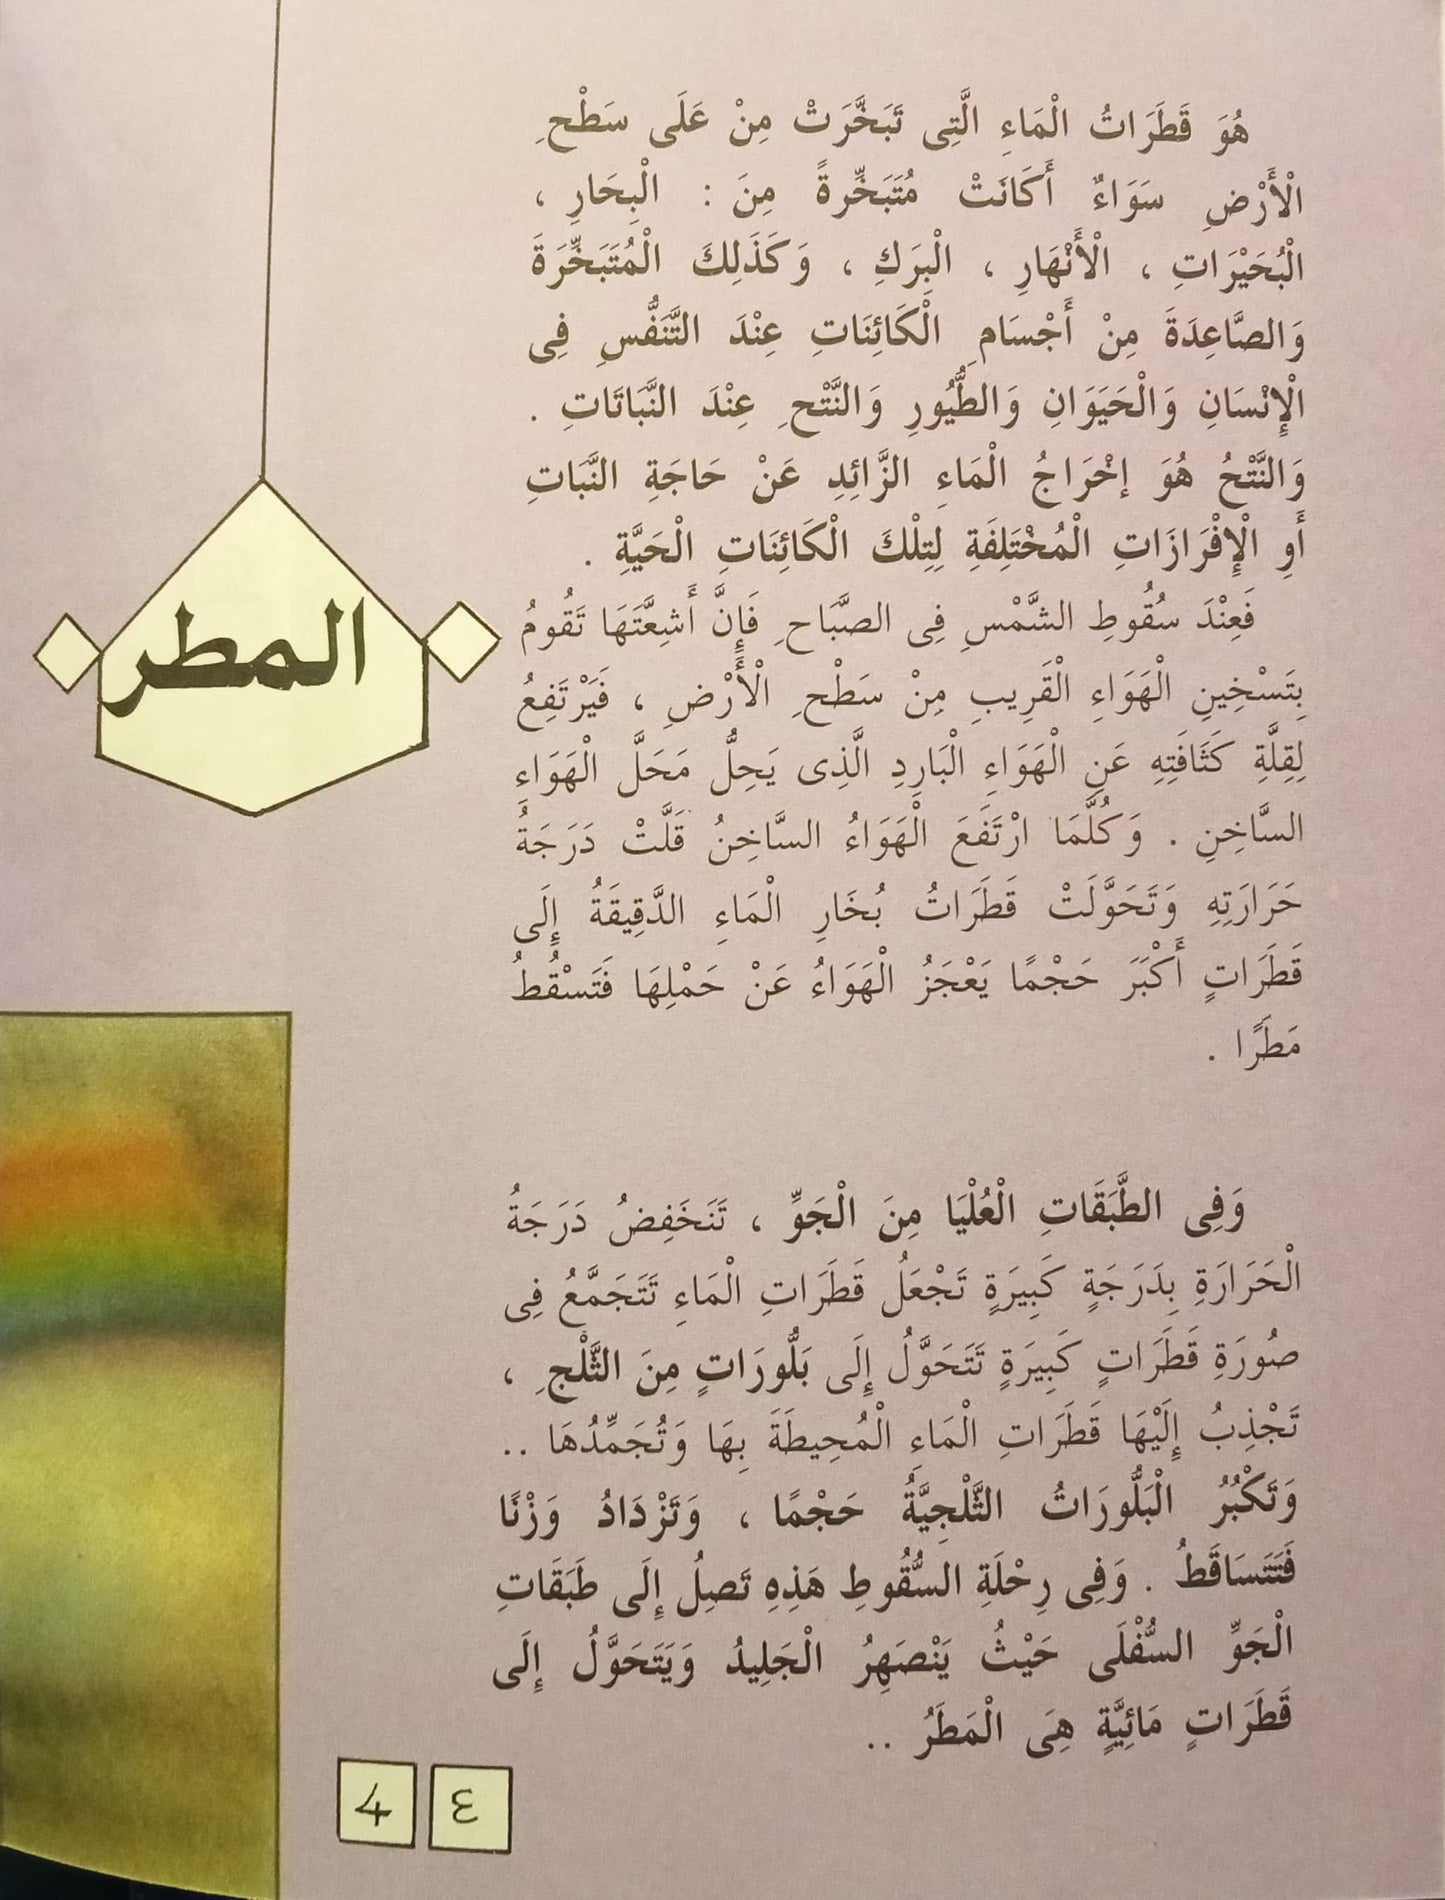 المطر - 31 السماوات والأرض وما بينهما سلسلة علوم جاء ذكرها في القرآن